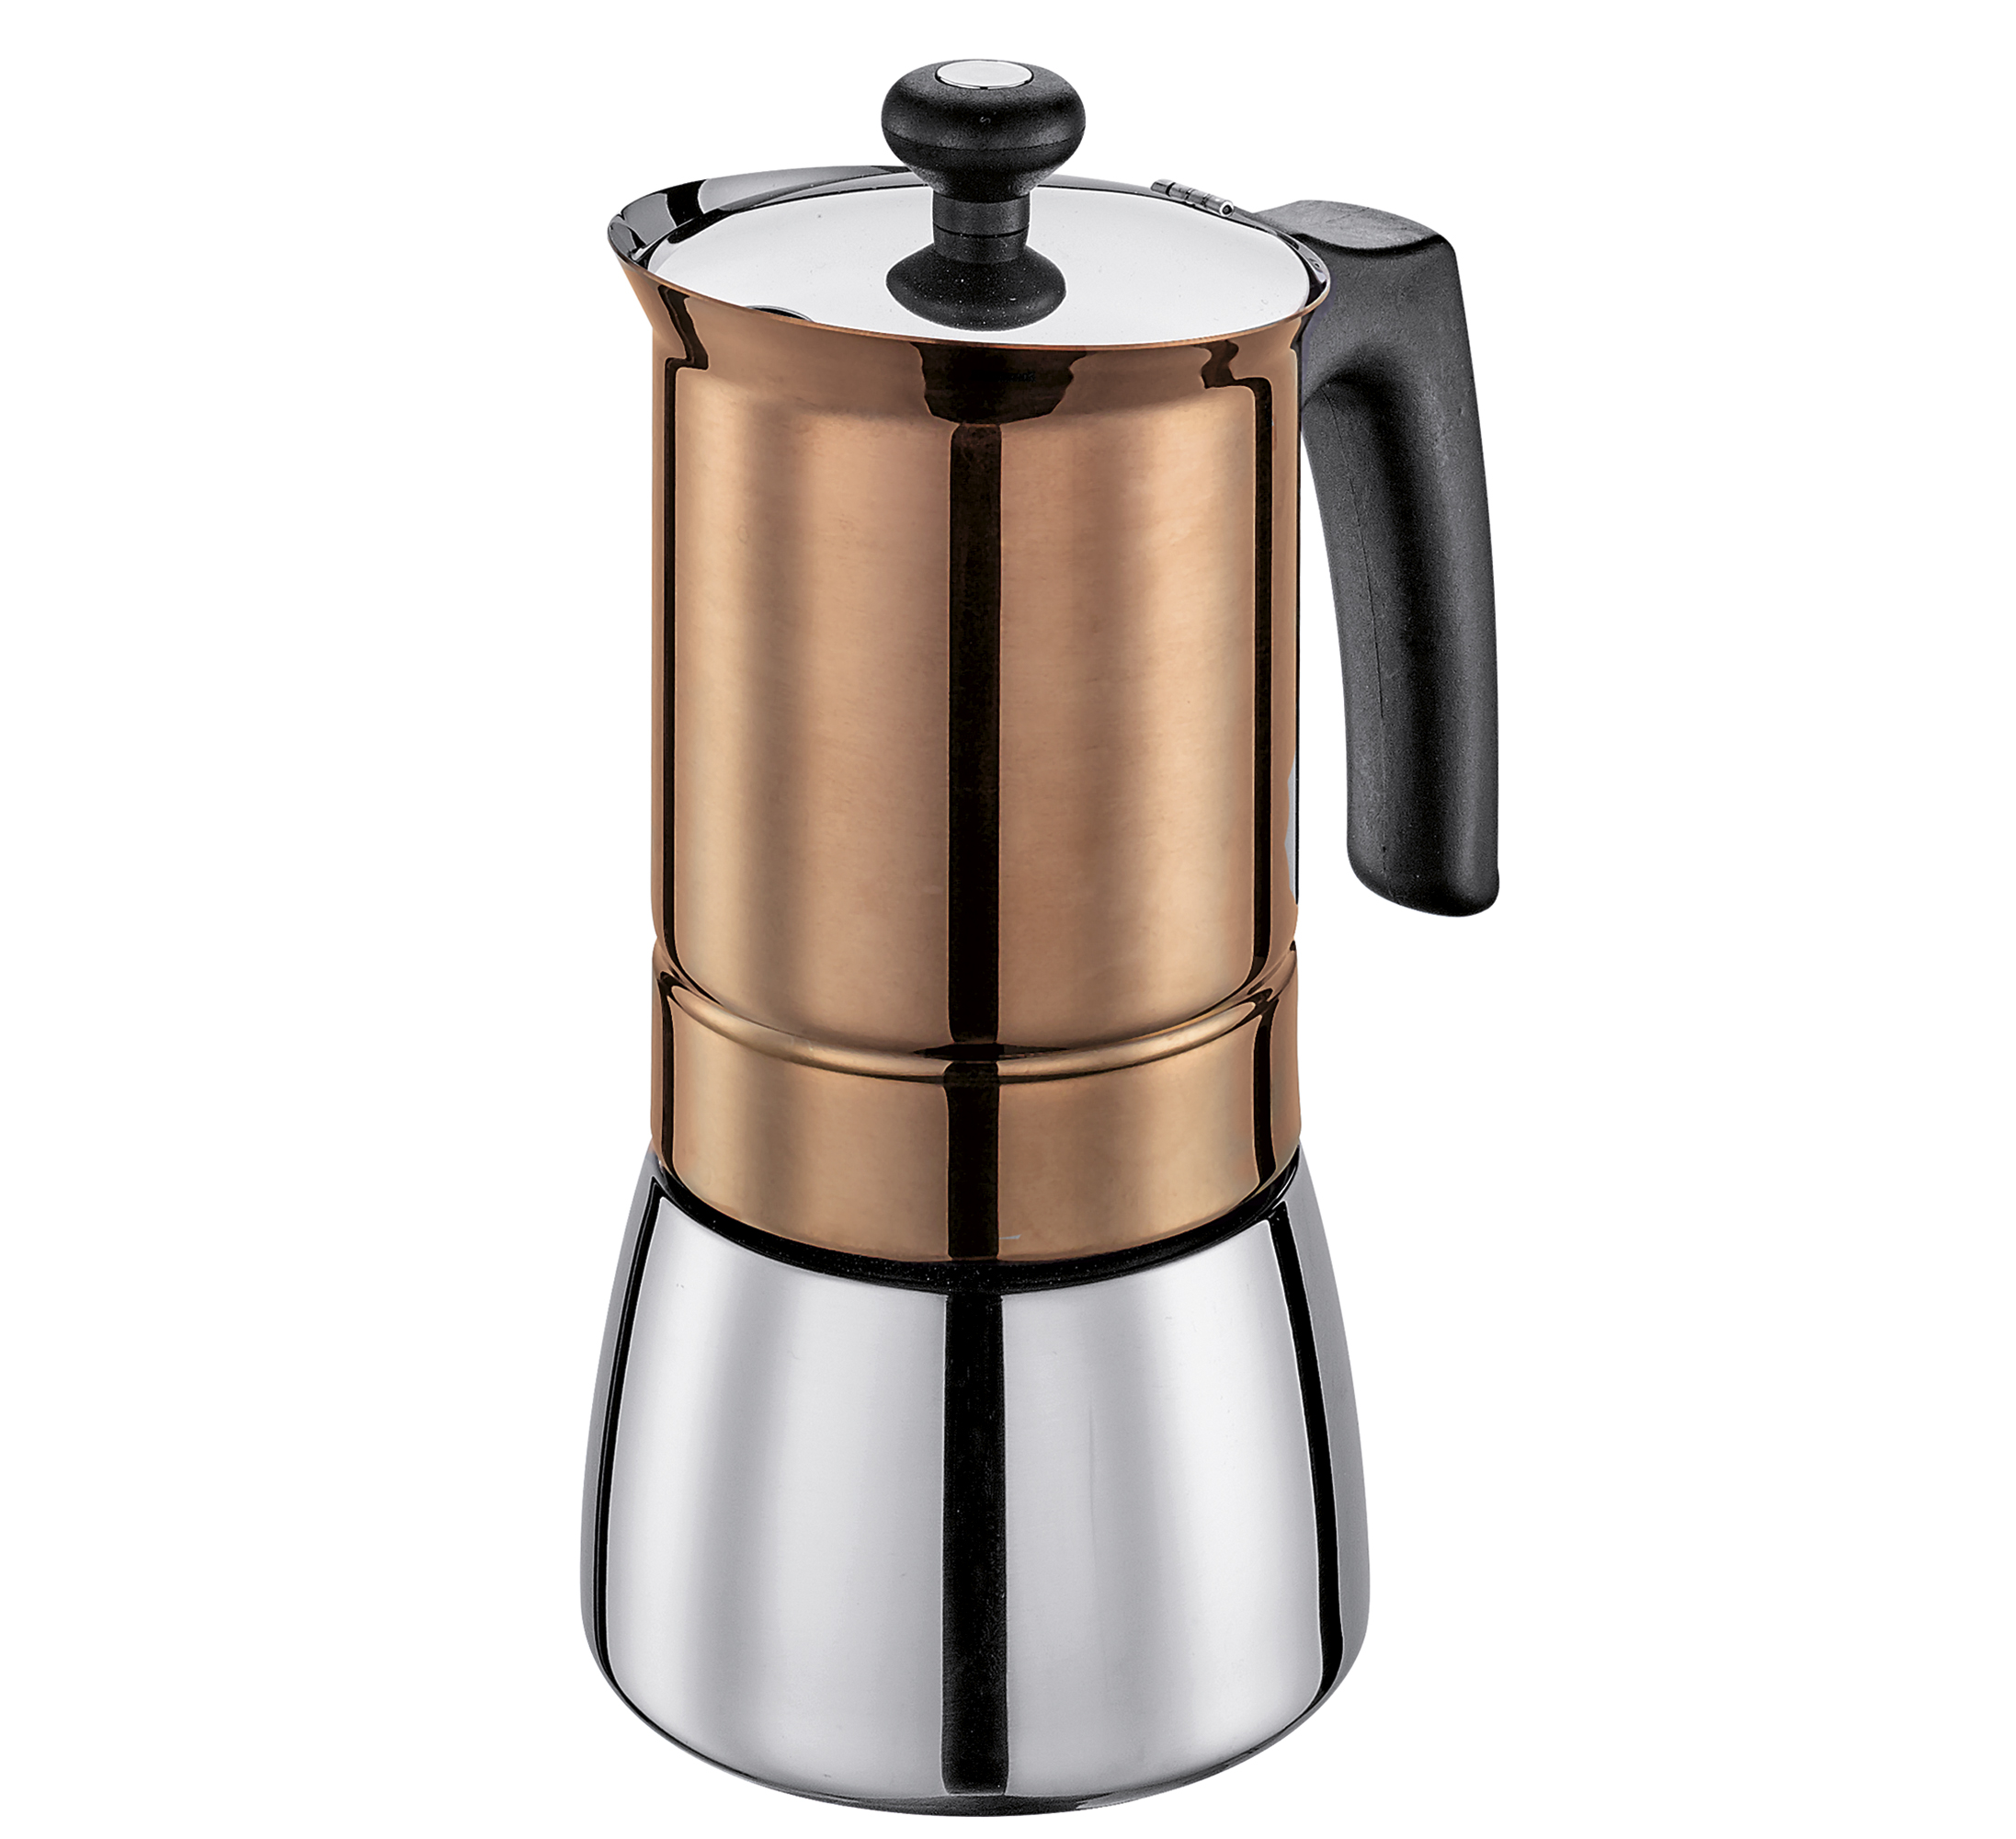 Espressokocher TOSCA 6 Tassen, Edelstahlkupfer ist ein Blickfang für jede Küche Mit induktionsgeeignetem Boden Ø 9 cm